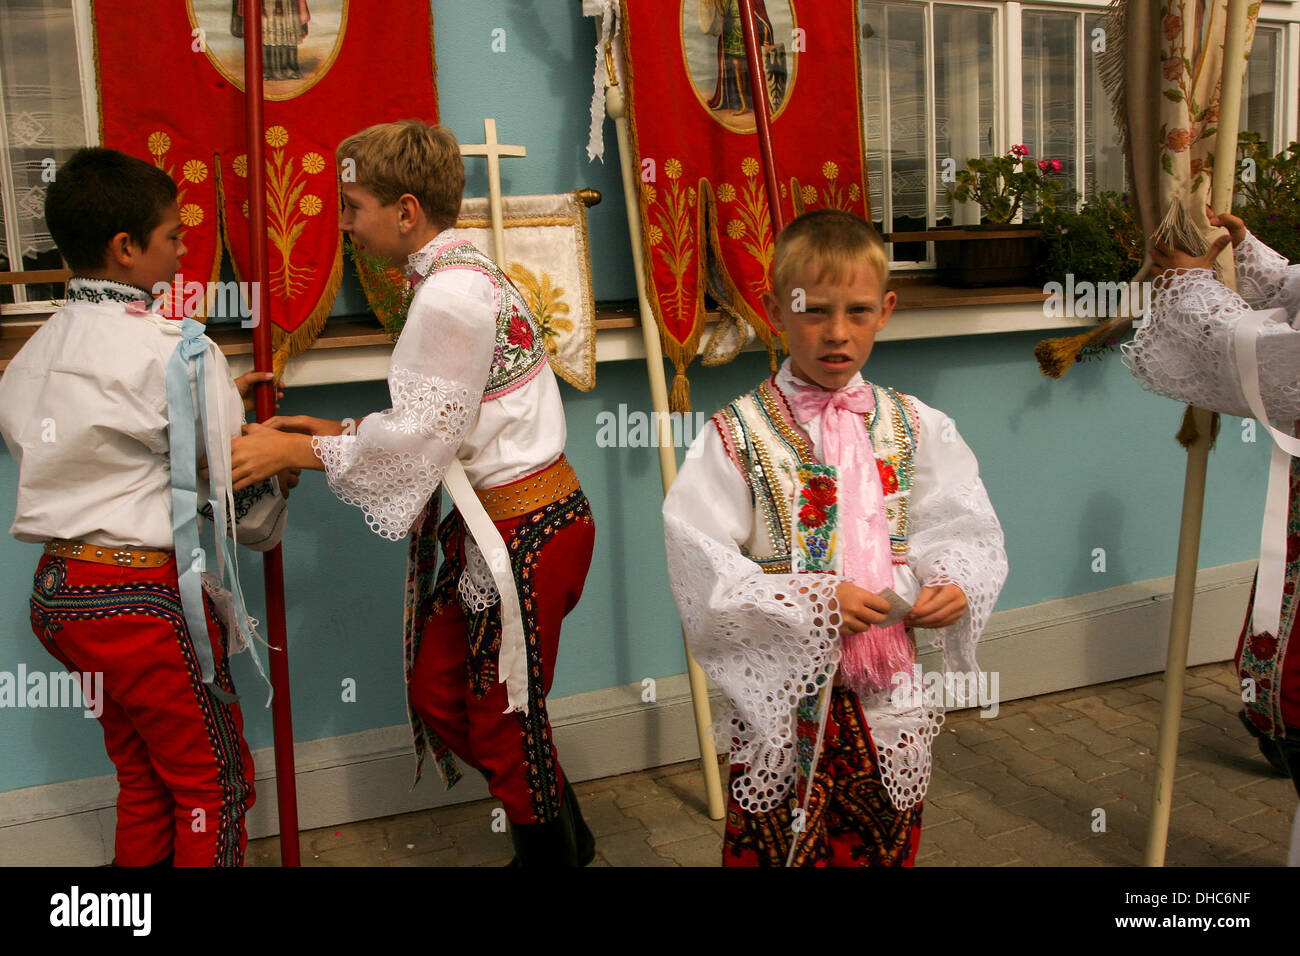 Les gens les garçons en costumes folkloriques en pèlerinage à Zarosice, Moravie du Sud, République Tchèque, Europe Banque D'Images